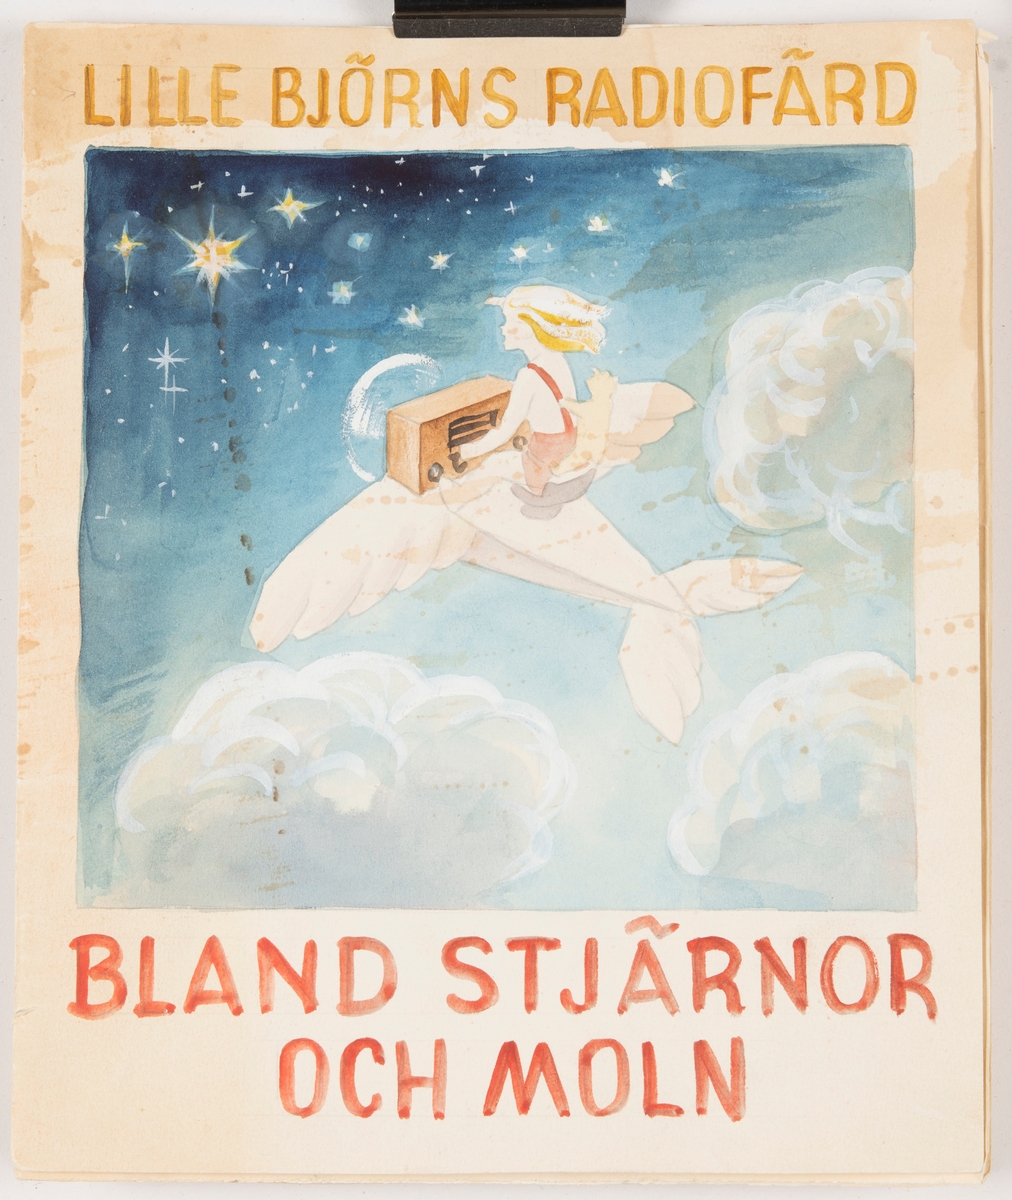 Skissbokens framsida föreställer ett barn som tillsammans med en nalle och radio sitter på ett flygplan. De flyger genom himlens moln på väg mot stjärnorna i rymden. Barnet har röda byxor och blondt hår. Himlen är ljusblå och rymden är mörkblå. 

Högst upp på bilden står med ockragul text "LILLE BJÖRNS RADIOFÄRD". Längst ner på bilden står med röd text "BLAND STJÄRNOR OCH MOLN".

Sedan följer ett första utkast till sidlayout för boken.